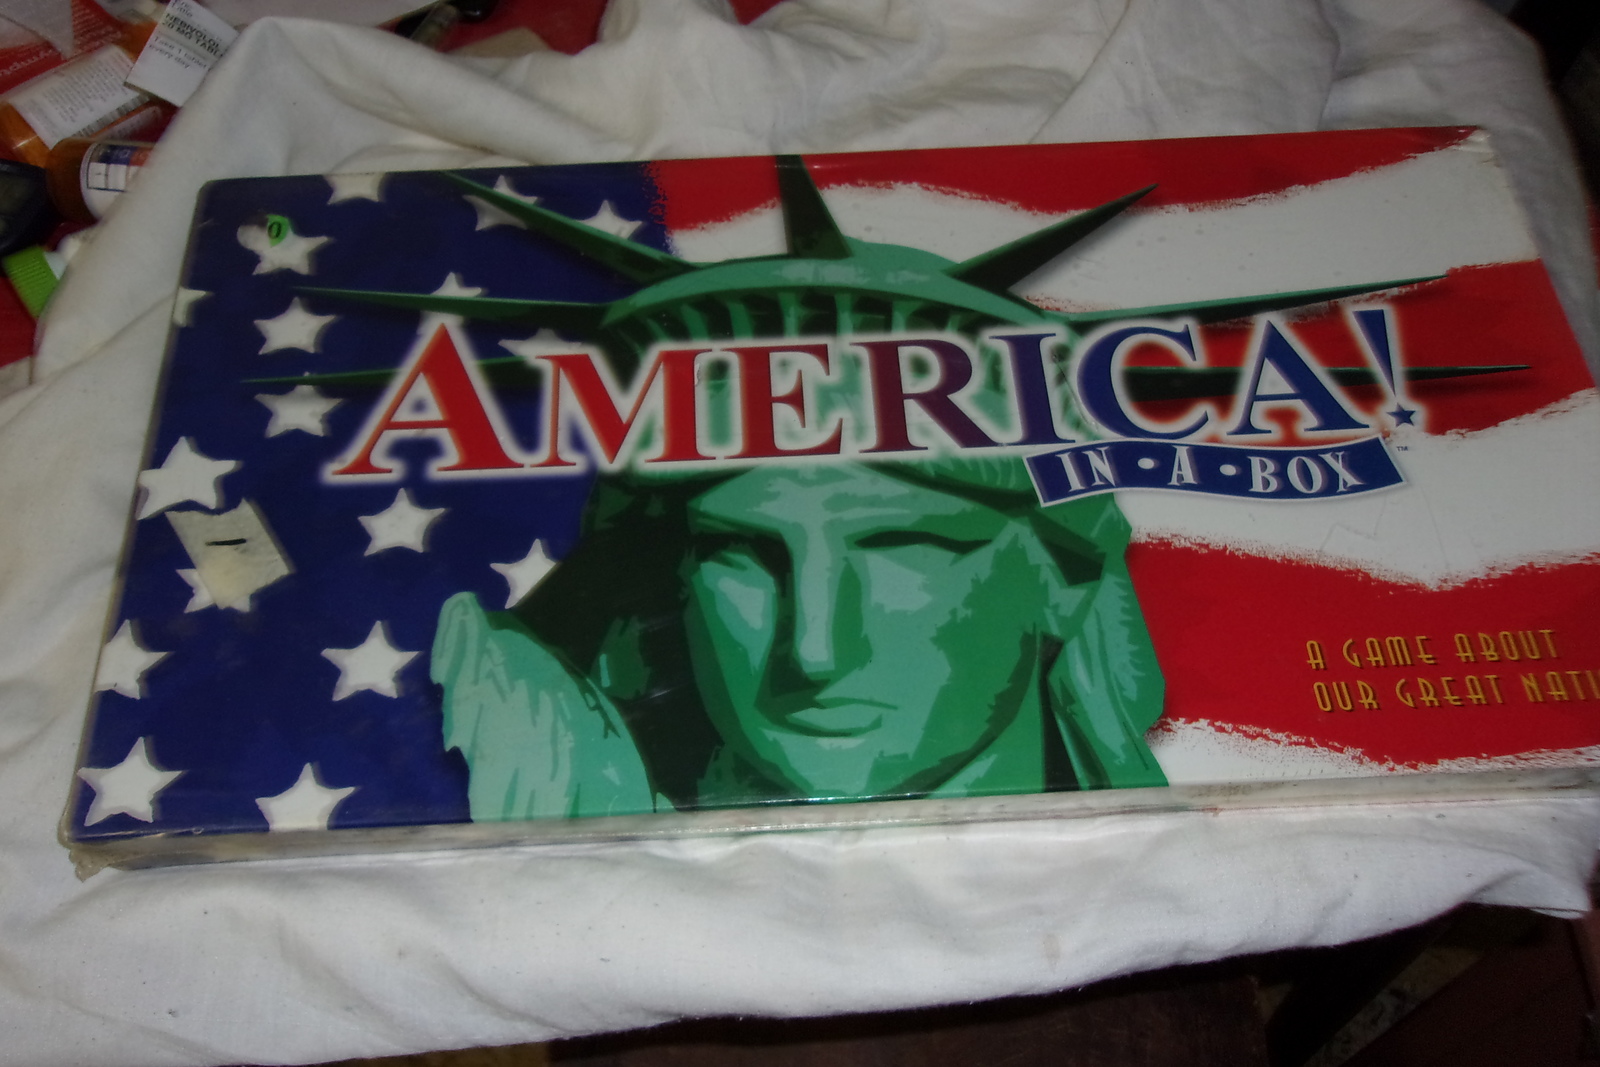 "America! In A Box" game - $30.00